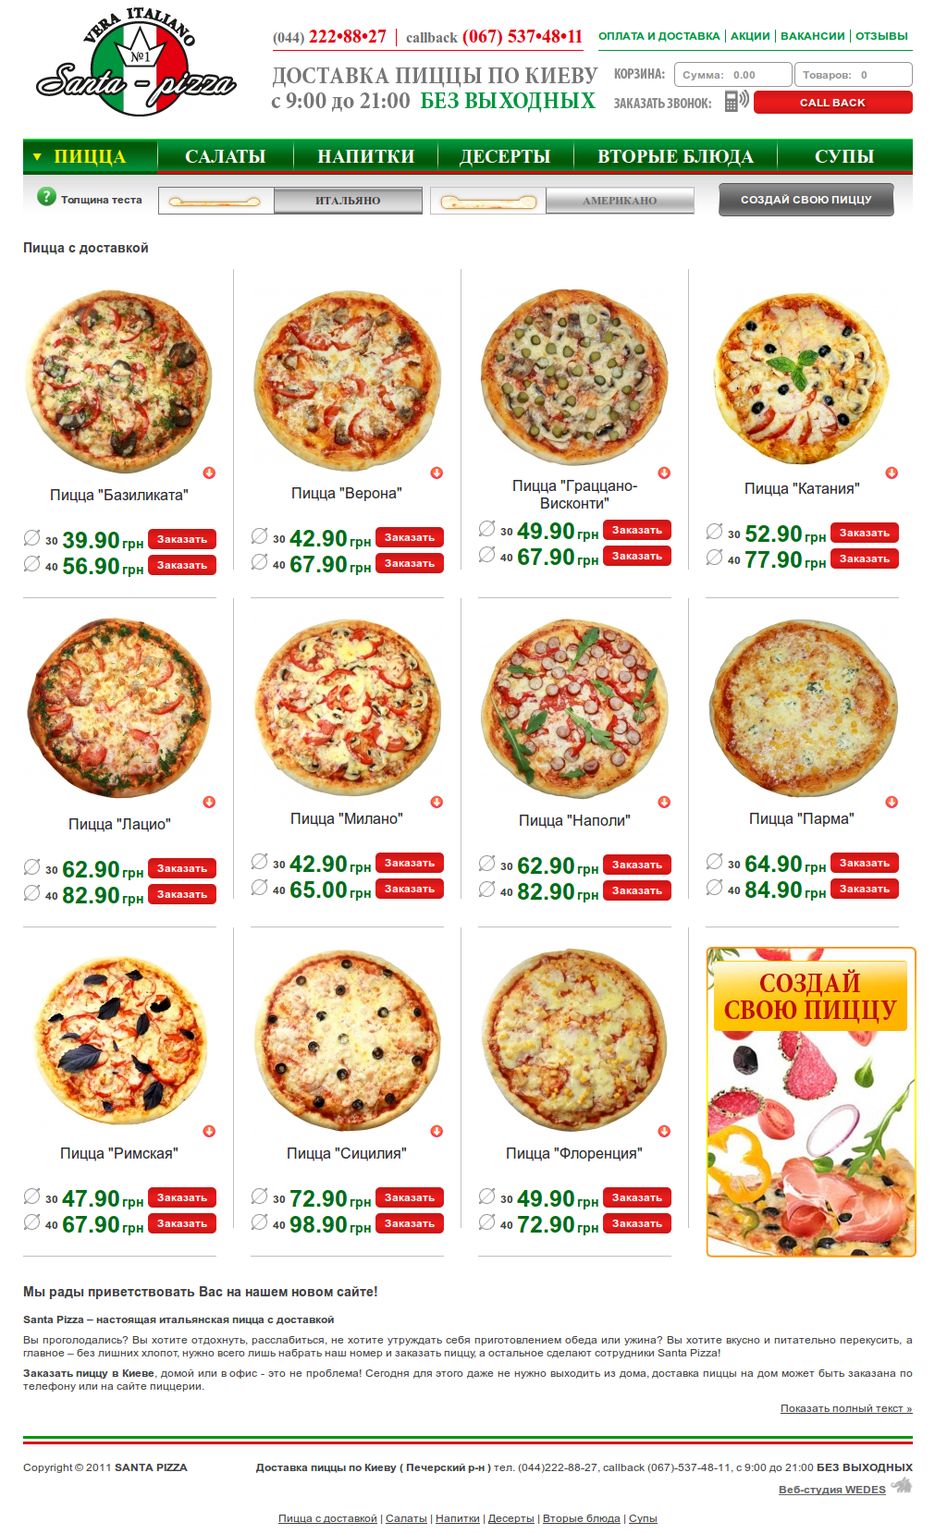 лучшая доставка пицца в москве рейтинг фото 116